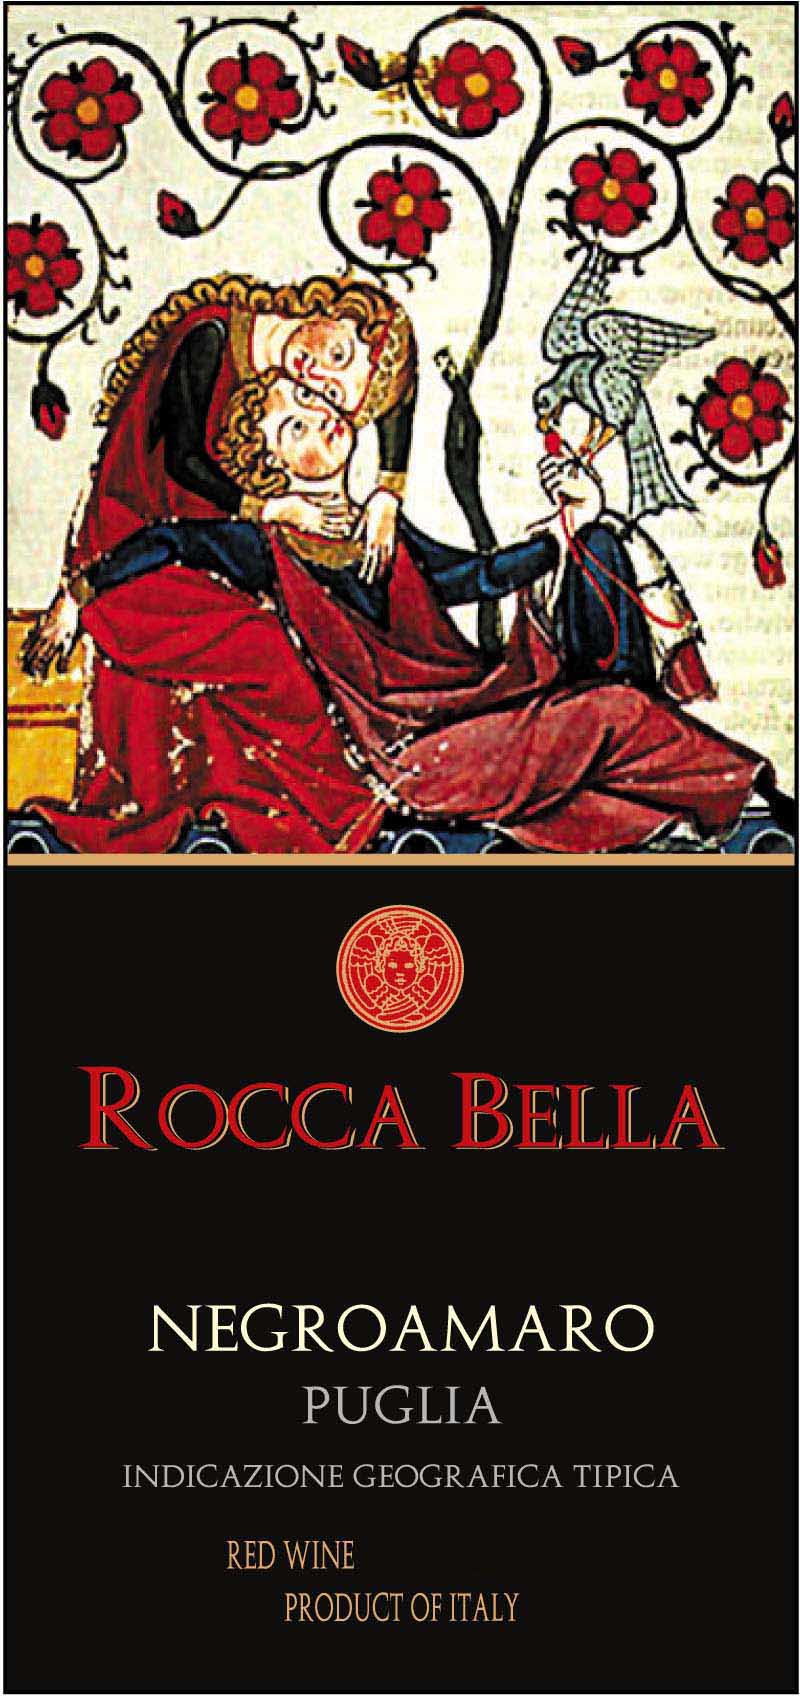 Rocca Bella - Negroamaro label